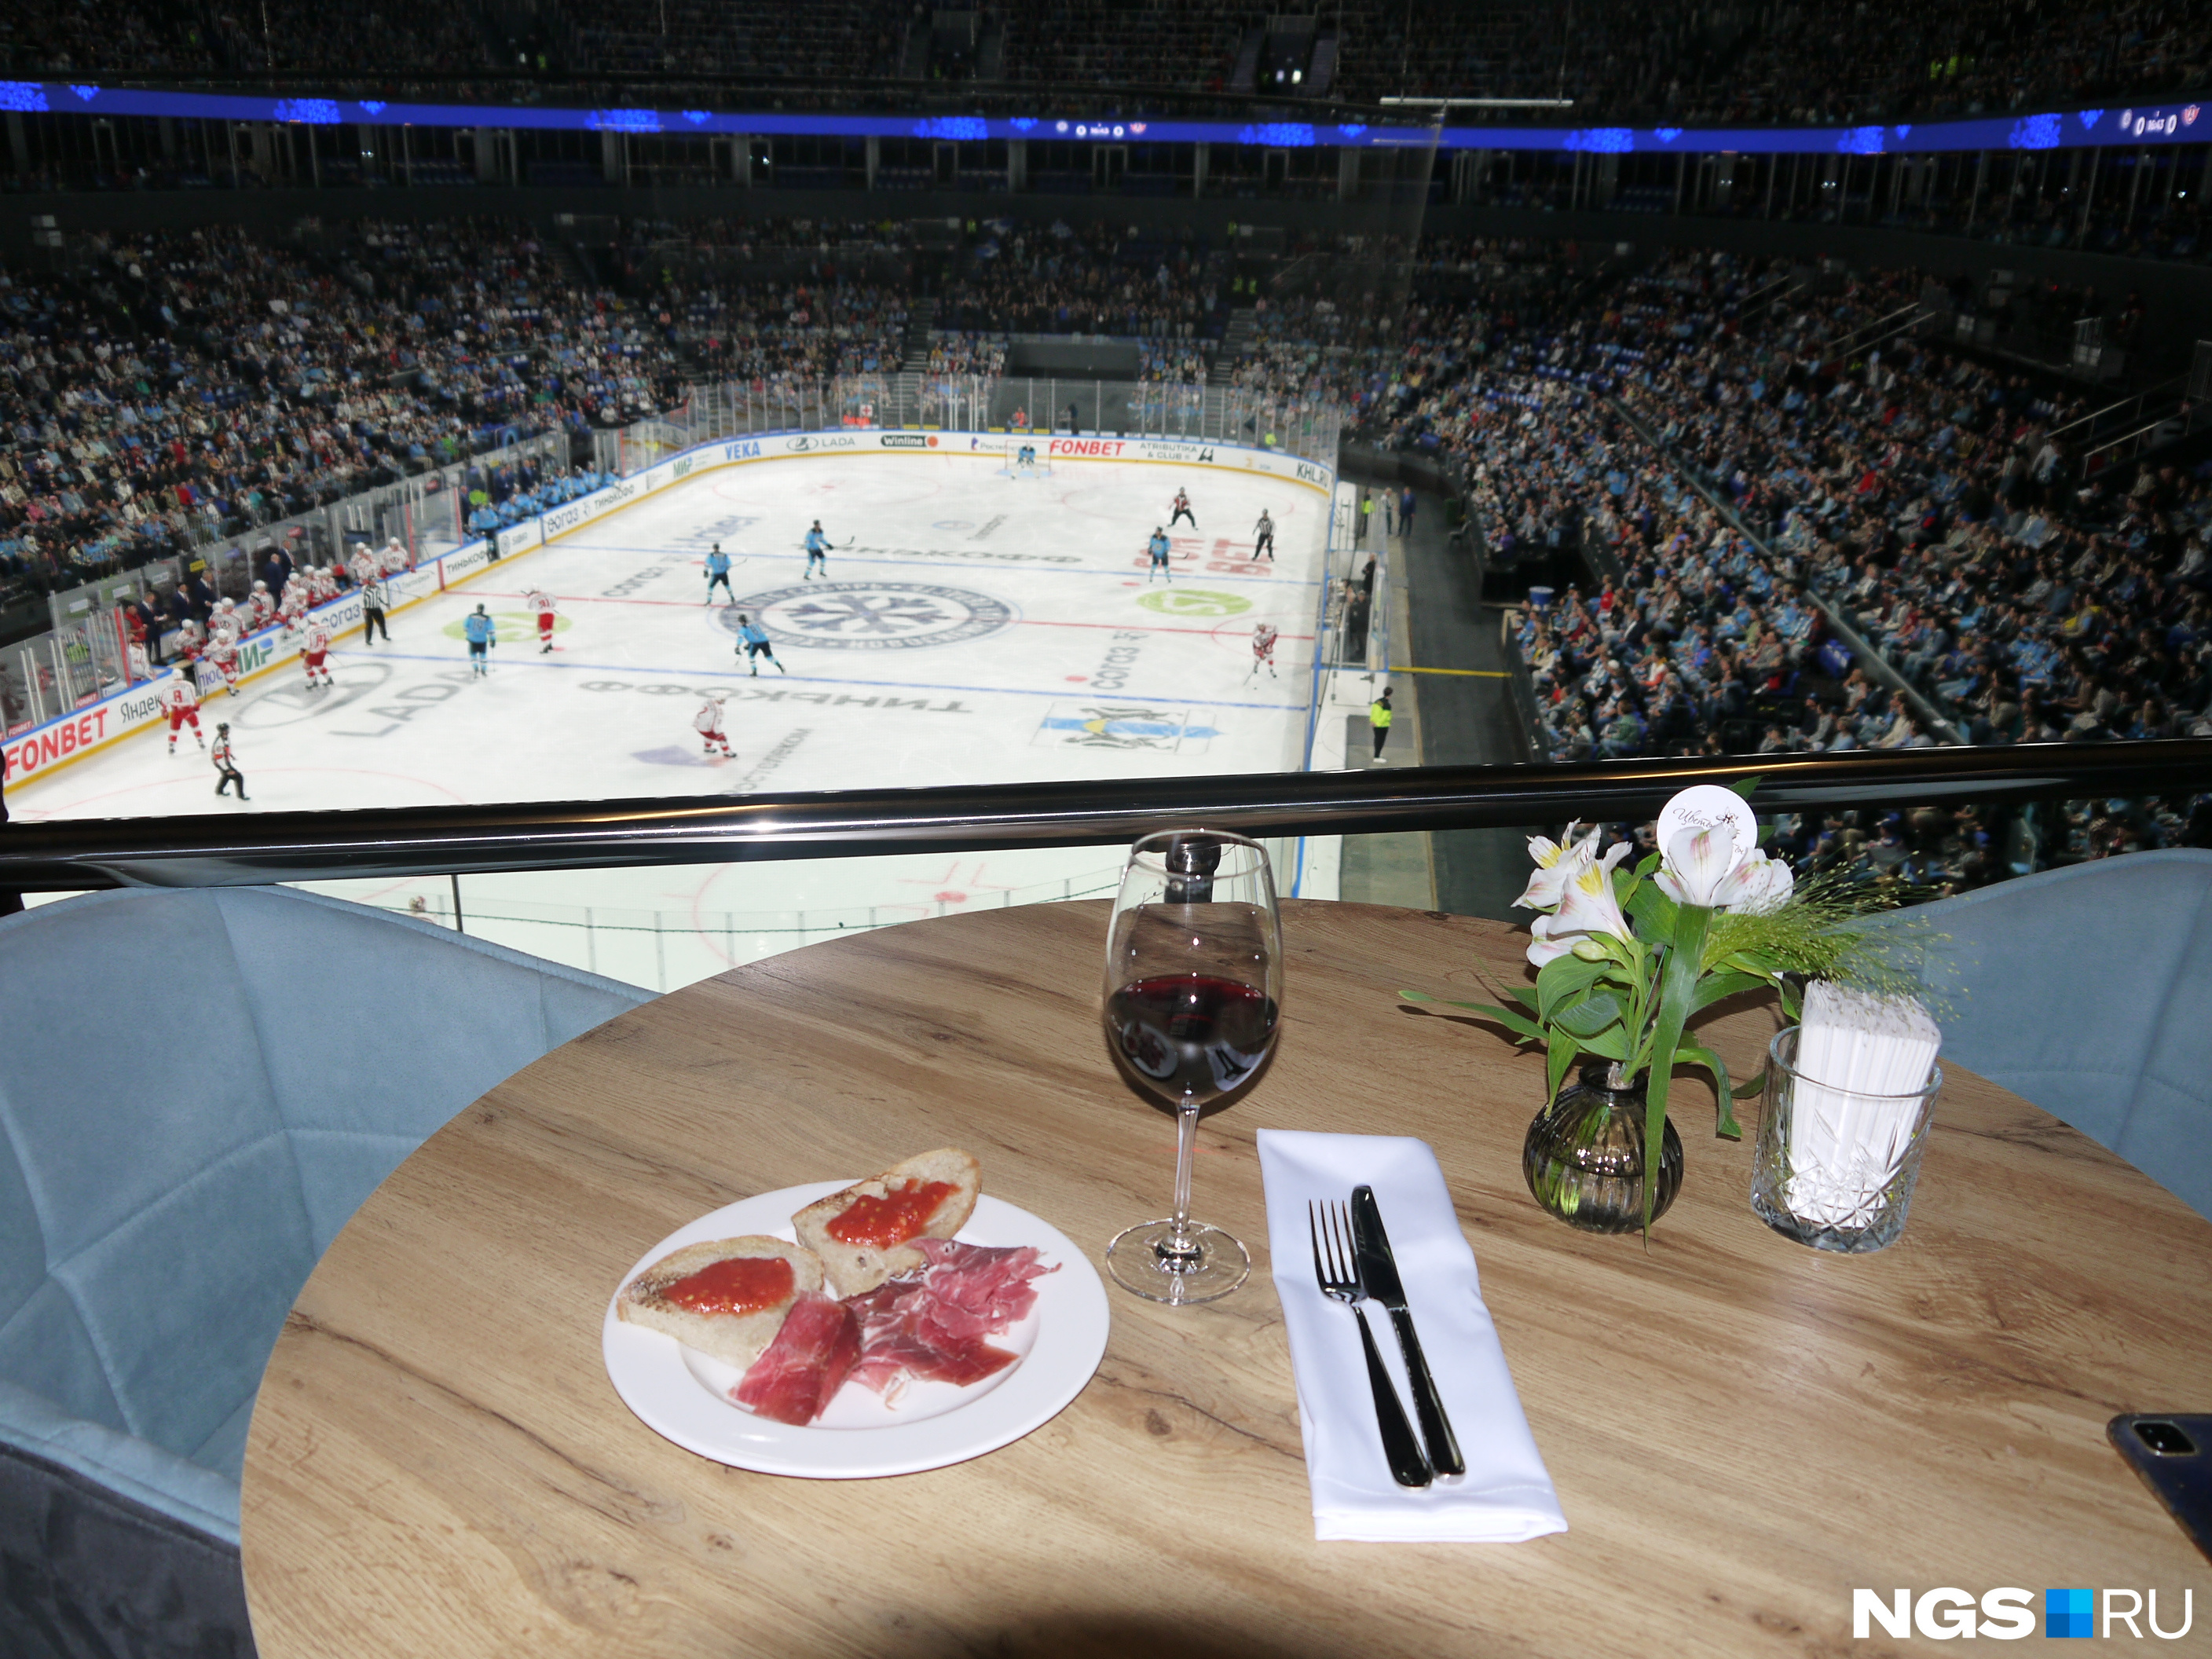 Тот, кто заплатил за билет на хоккей почти 9000 рублей, смог скрасить вчерашнее поражение любимой команды едой и напитками. «Сибирь» уступила со счетом 1:6